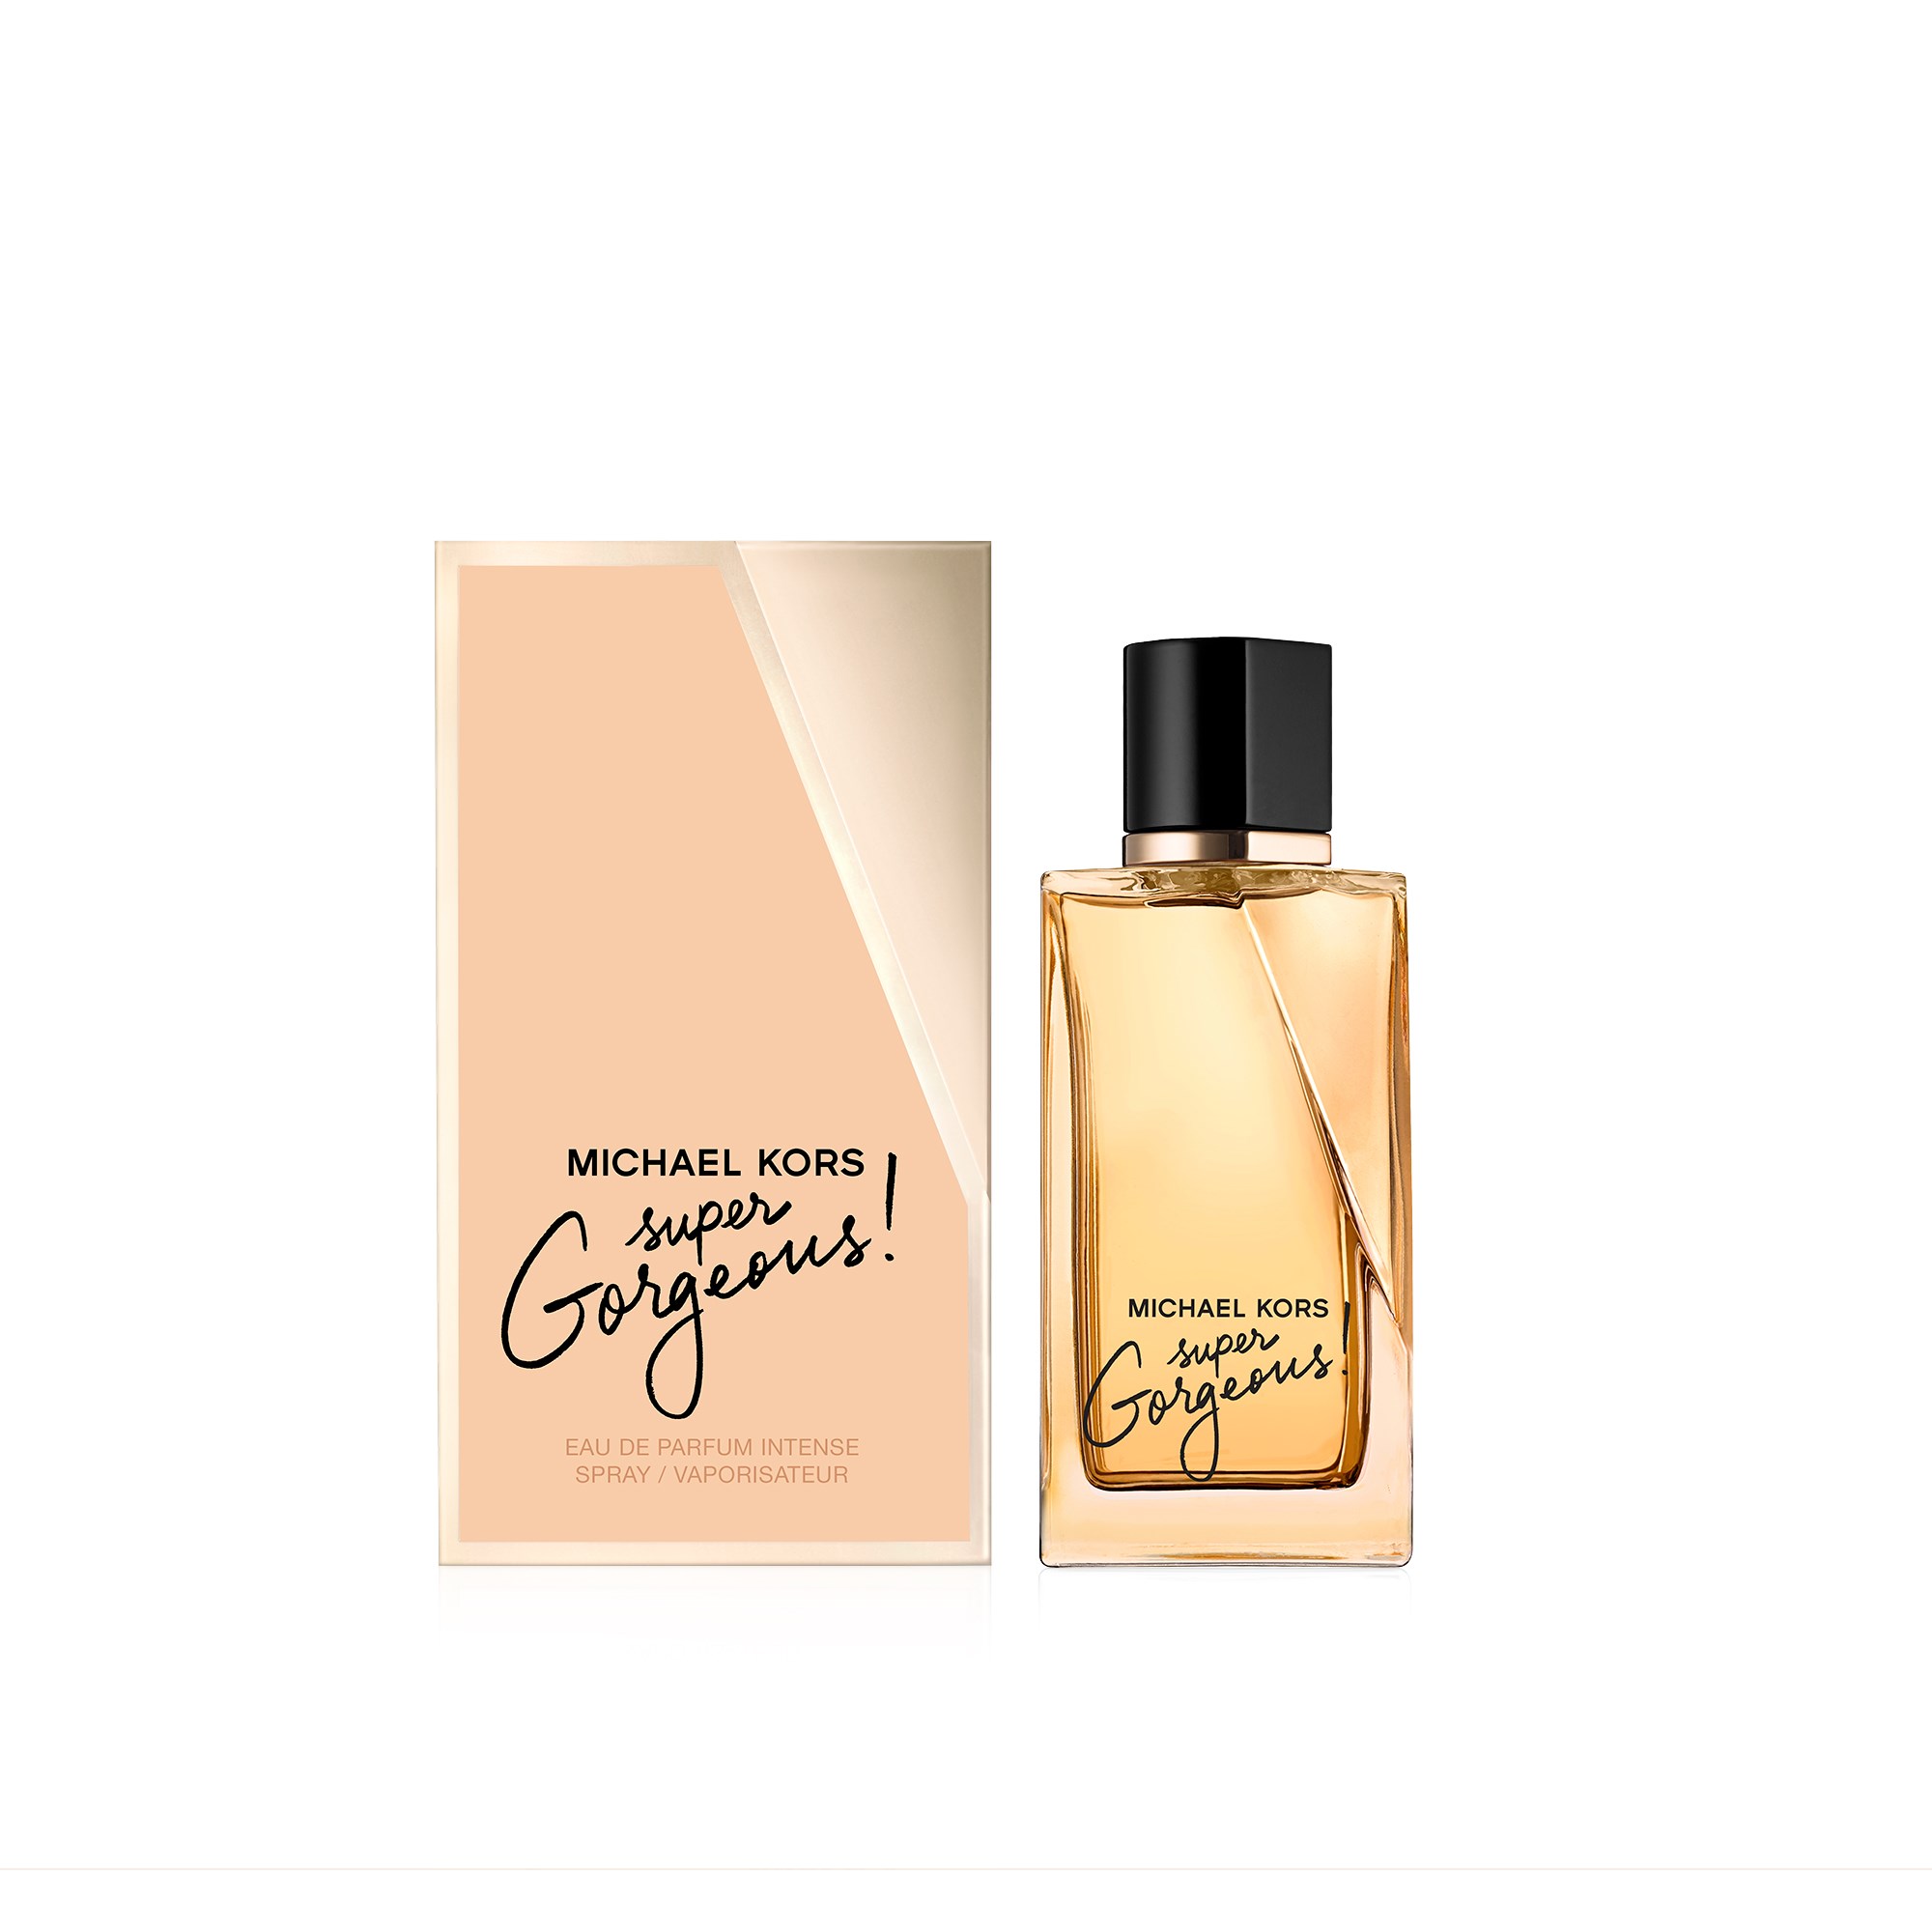 Michael Kors Super Gorgeous Eau de parfum 50 ml